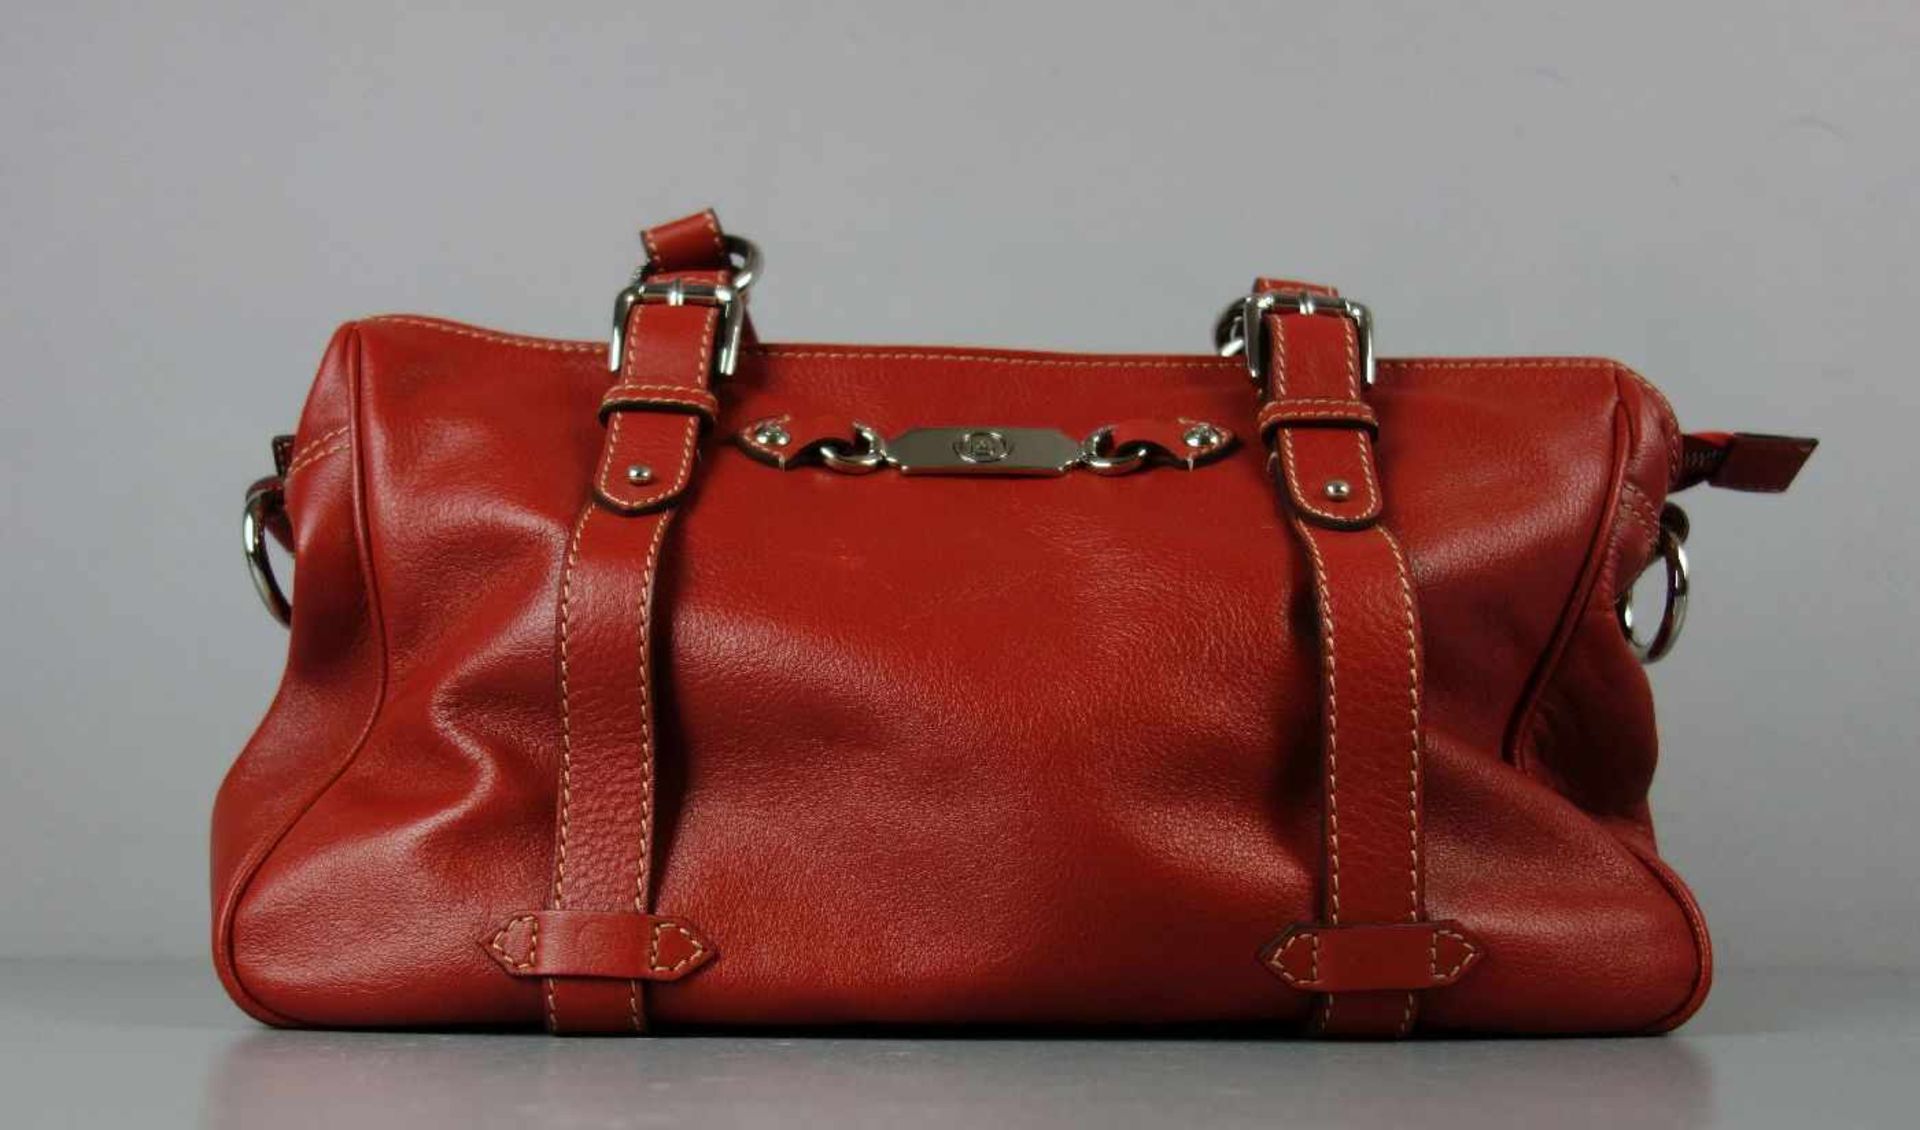 BOGNER HANDTASCHE, Vintage Tasche des 1932 in München gegründeten Modeunternehmens Willy Bogner GmbH - Image 4 of 6